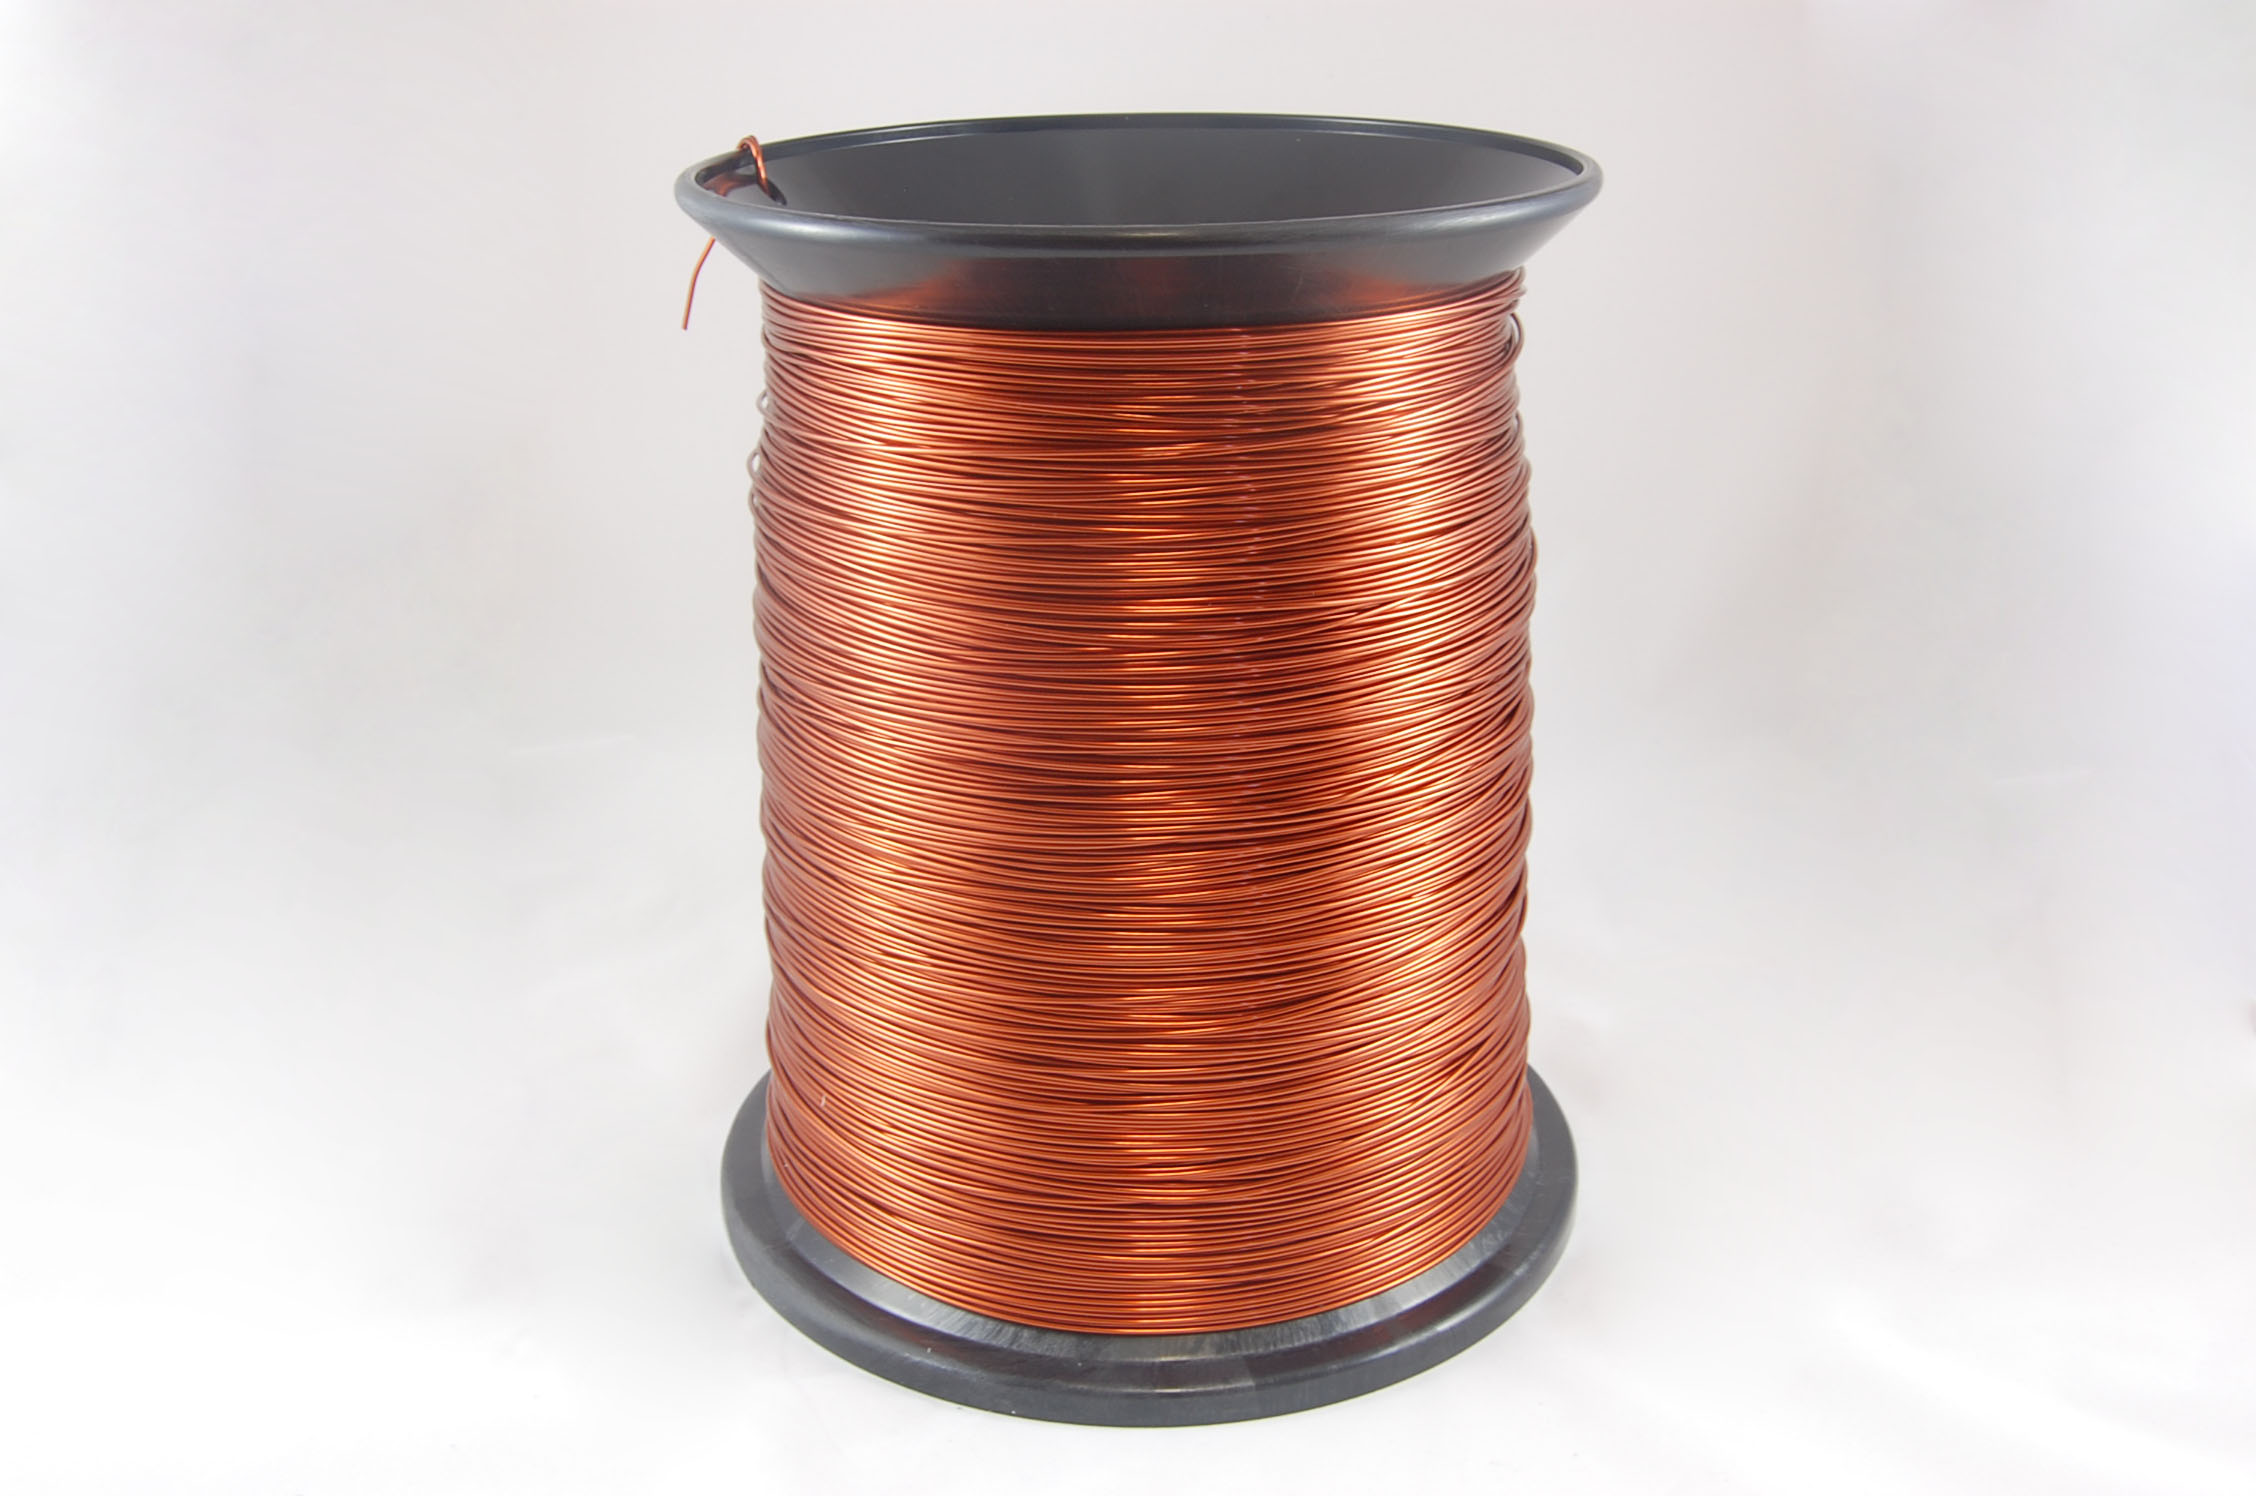 #14 Heavy GP/MR-200 Round MW 35 Copper Magnet Wire 200°C, copper, 85 LB pail (average wght.)